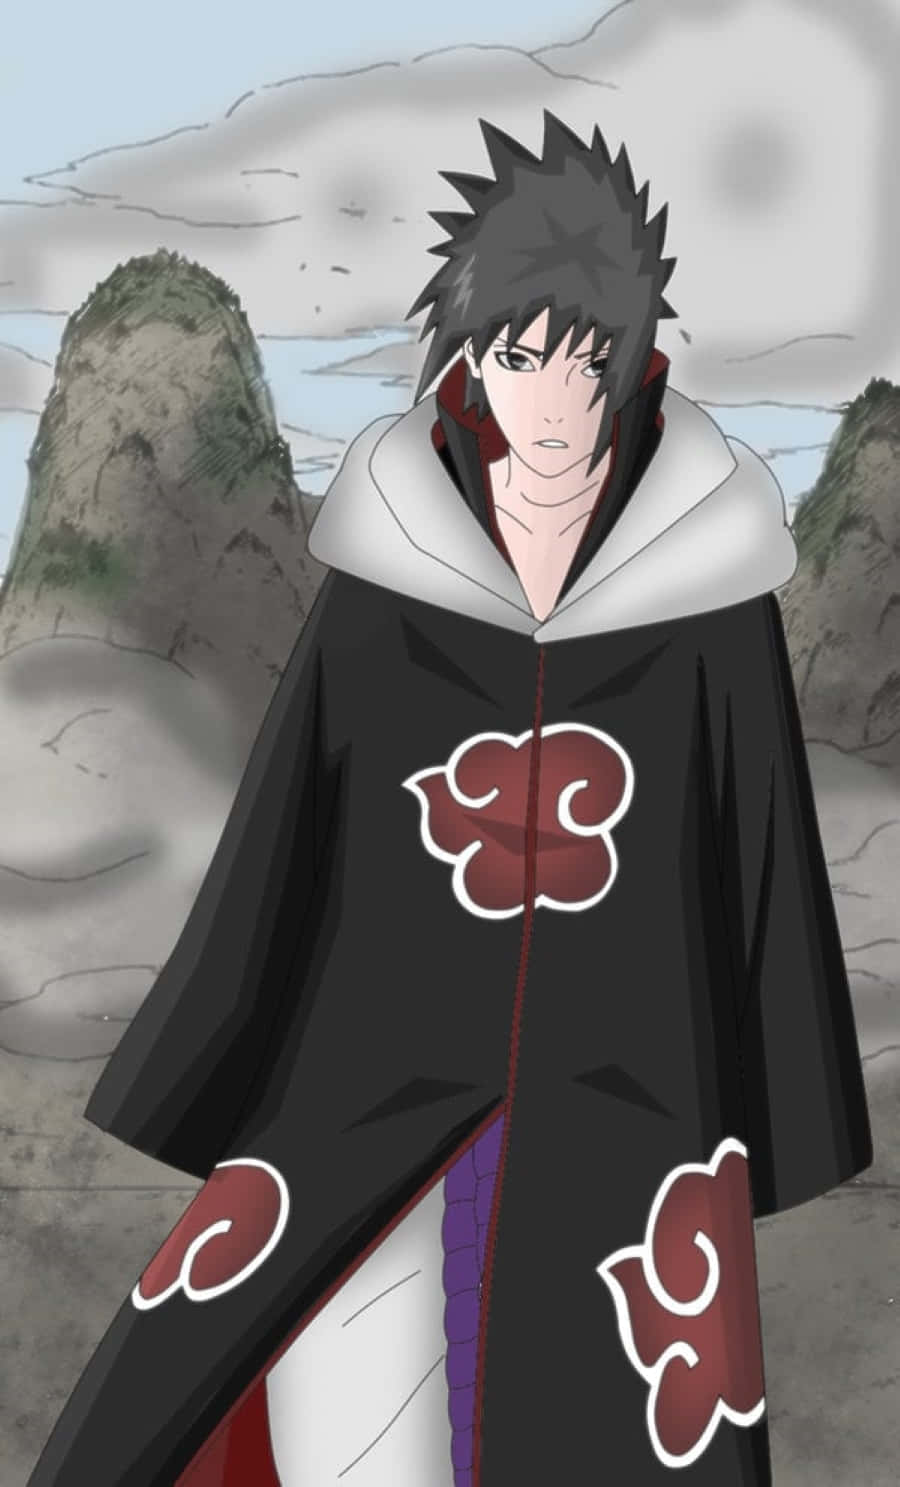 Akatsuki Sasuke, the cold, powerful shinobi. Wallpaper